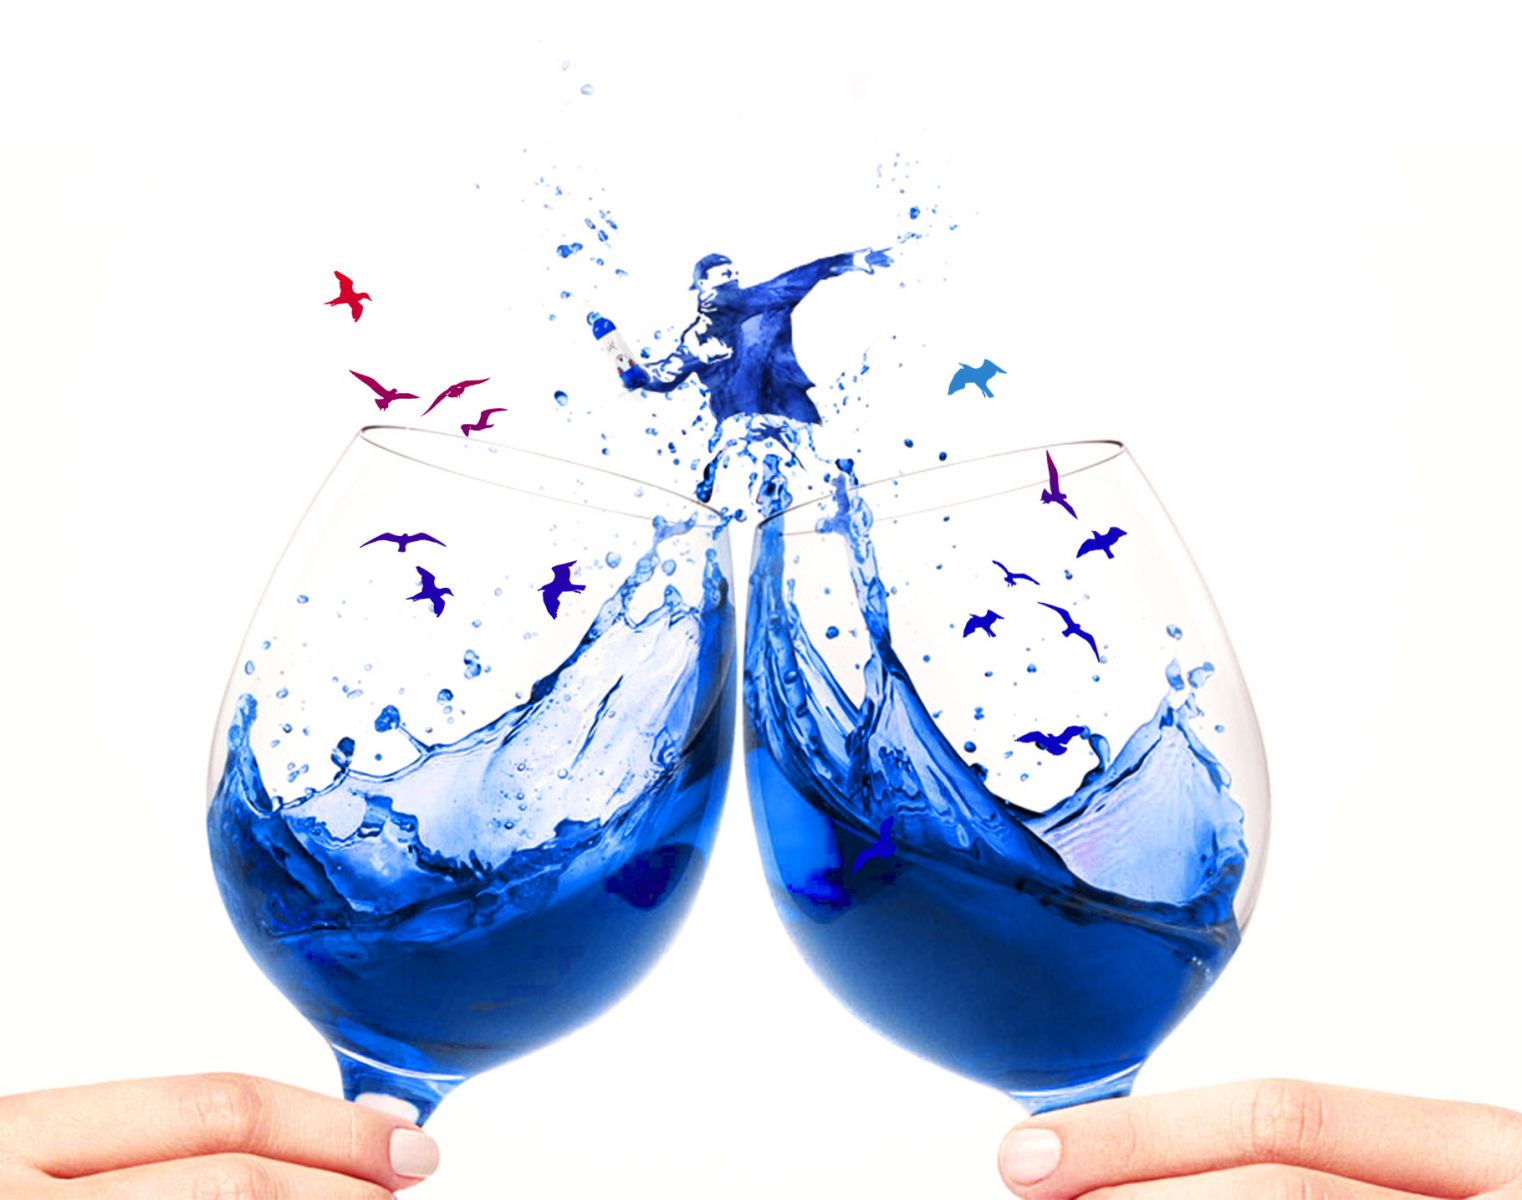 進口西班牙gik藍色葡萄酒代理銷售,Gik Blue Wine代理銷售,藍色葡萄酒代理銷售,Gik藍色葡萄酒代理銷售, Gik台灣進口商,Gik藍色葡萄酒代理商.